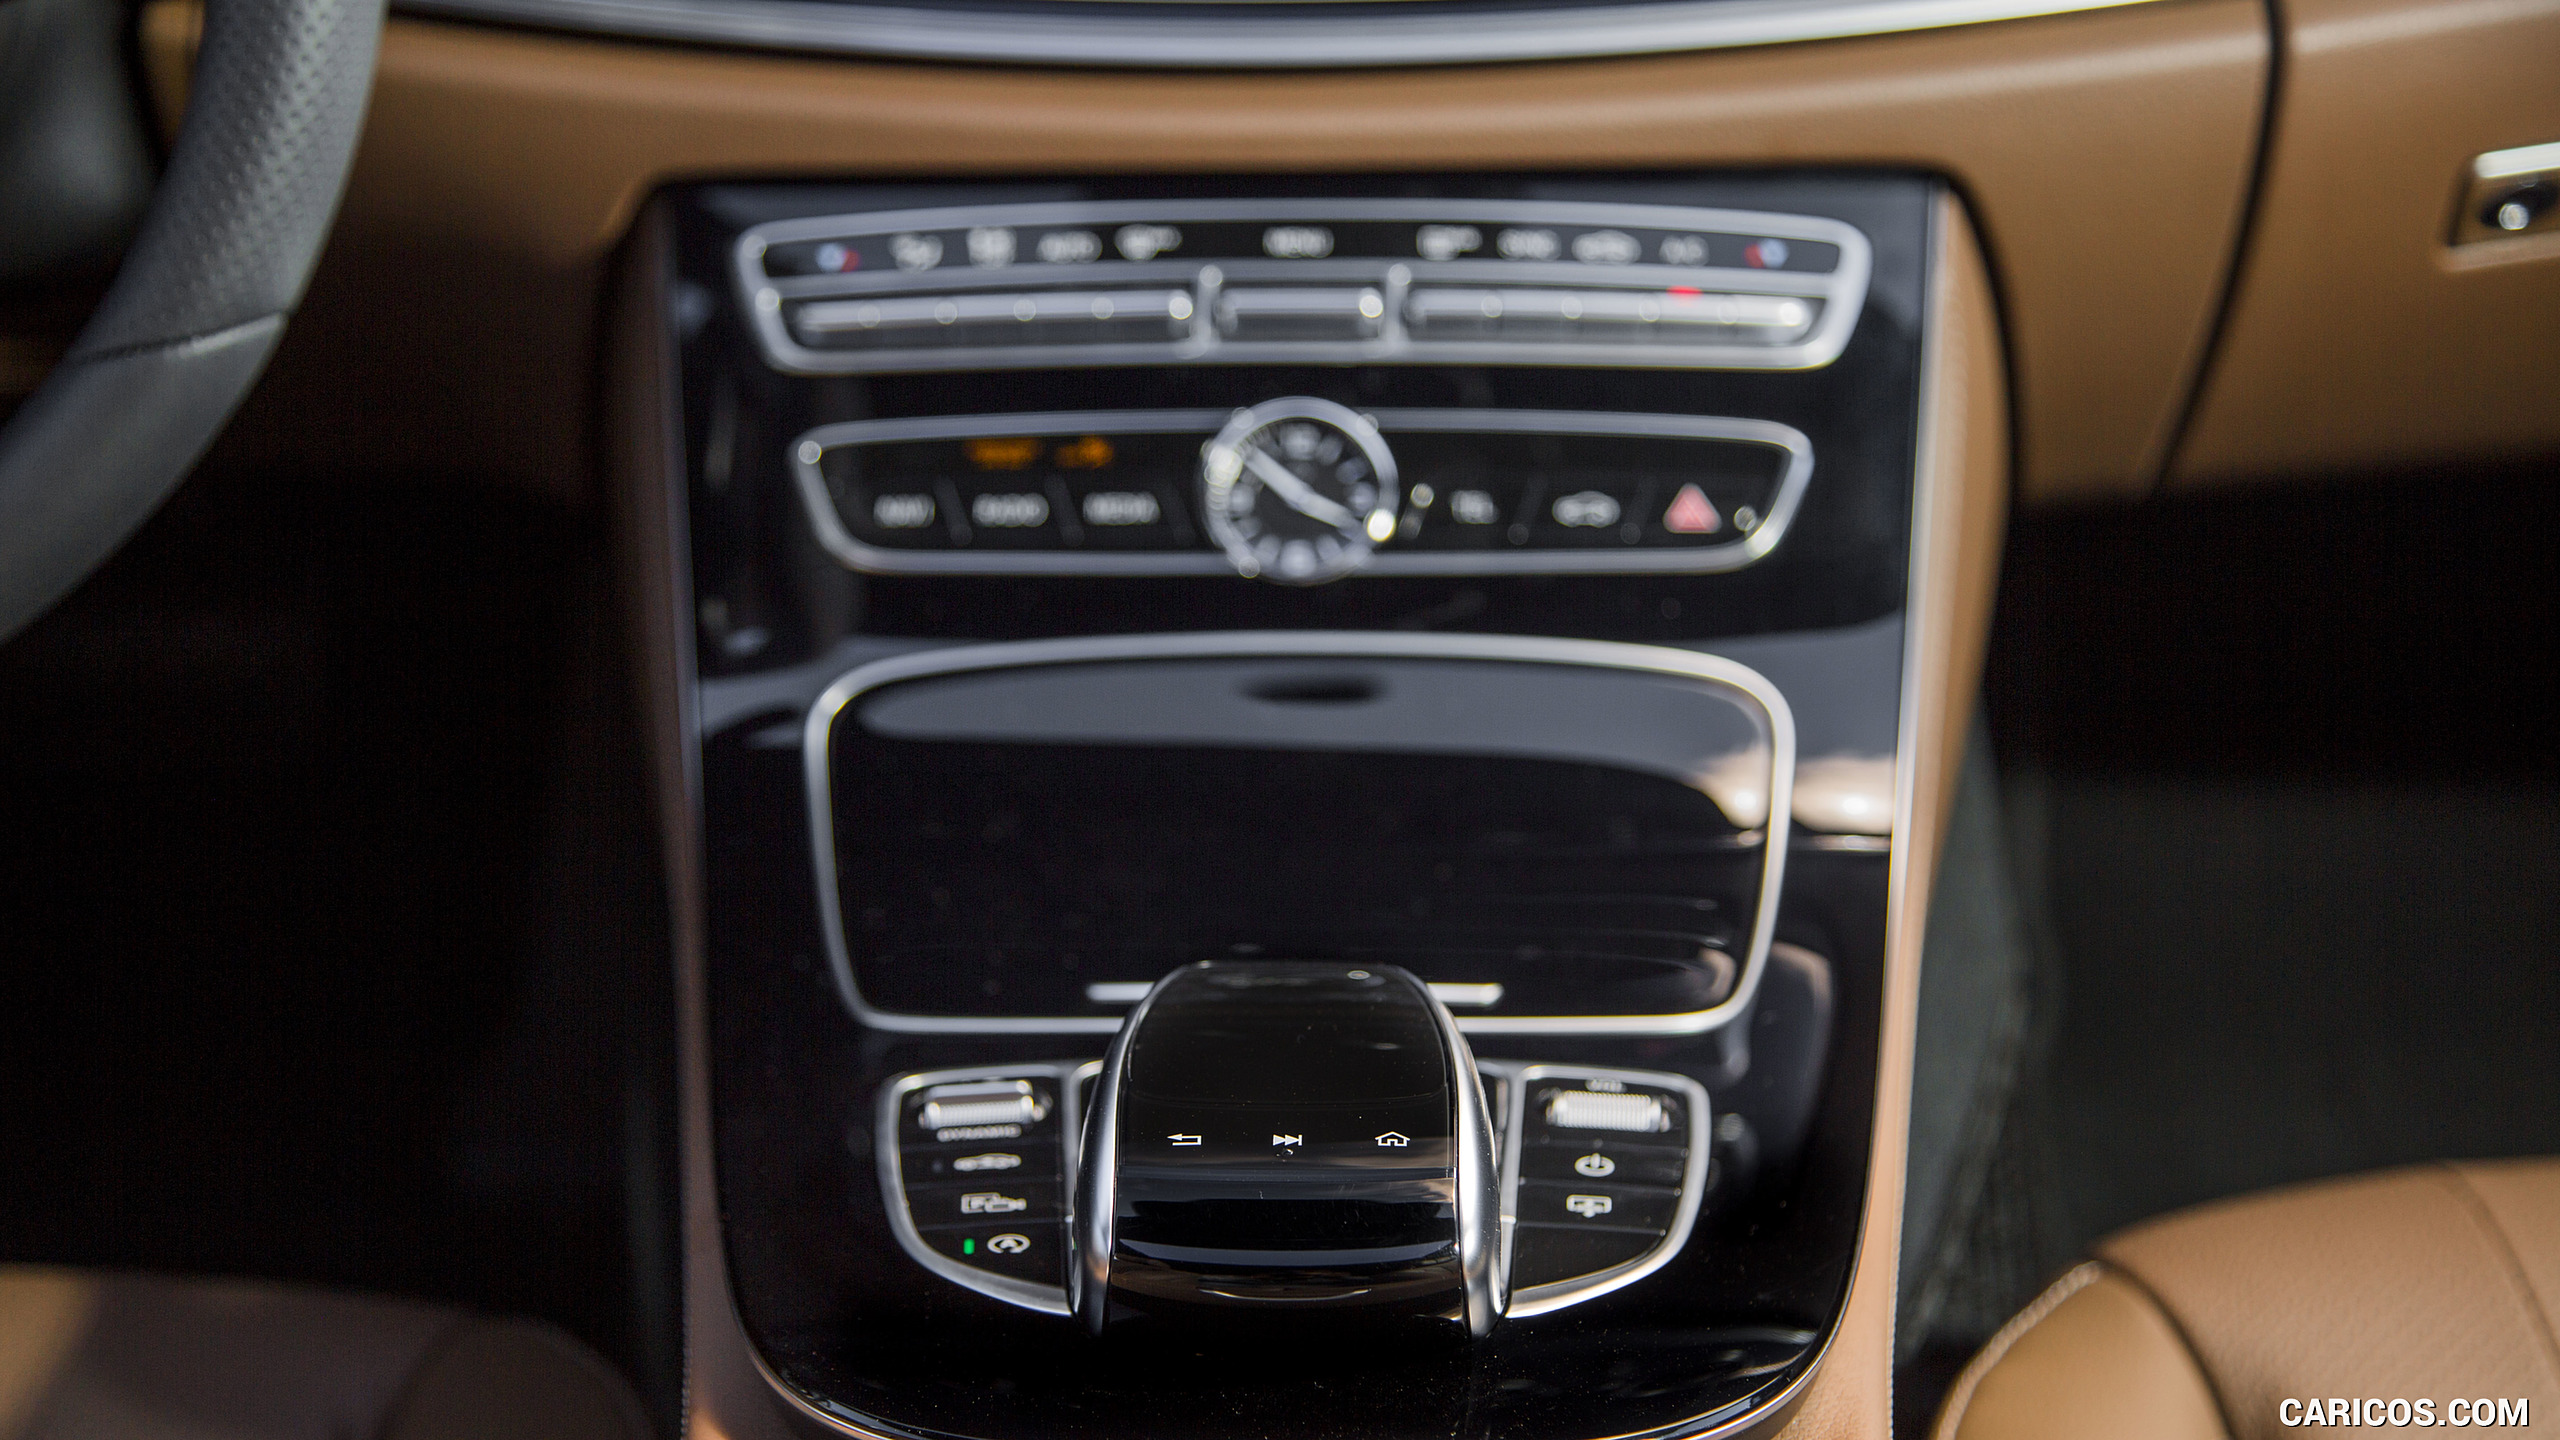 2017 Mercedes-Benz E-Class E300 Sedan (US-Spec) - Interior, Controls, #75 of 117